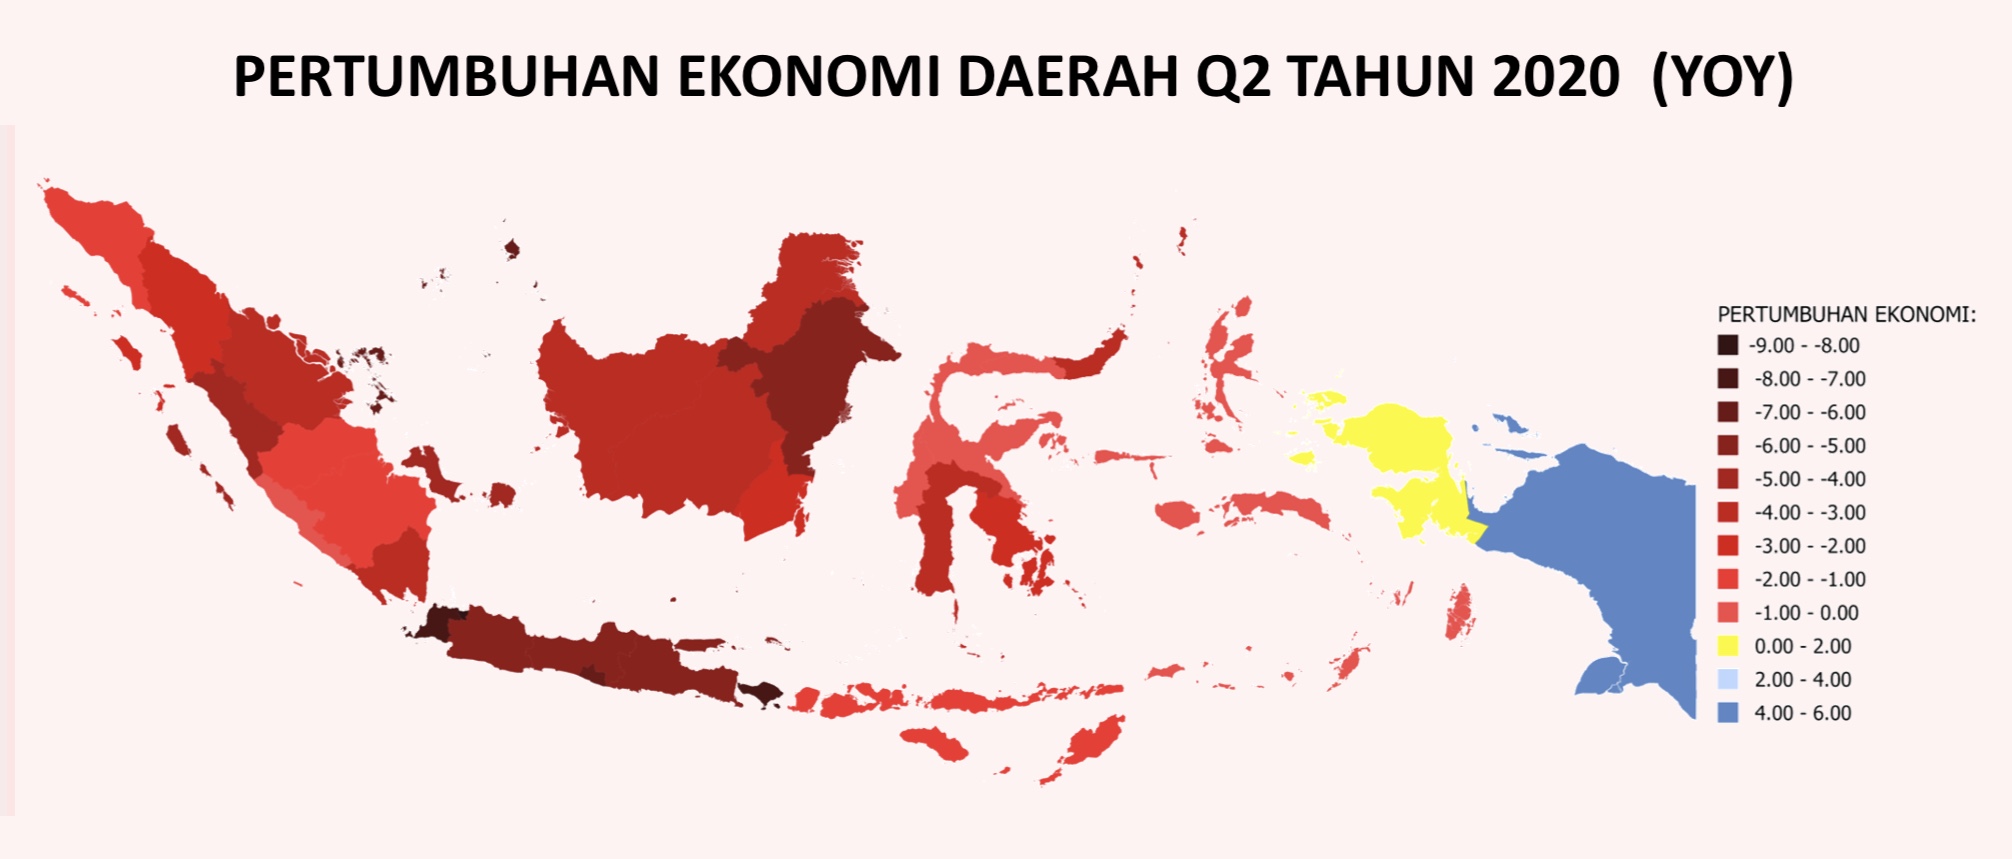 Peta Pertumbuhan Ekonomi Q2 2020 Provinsi di Indonesia